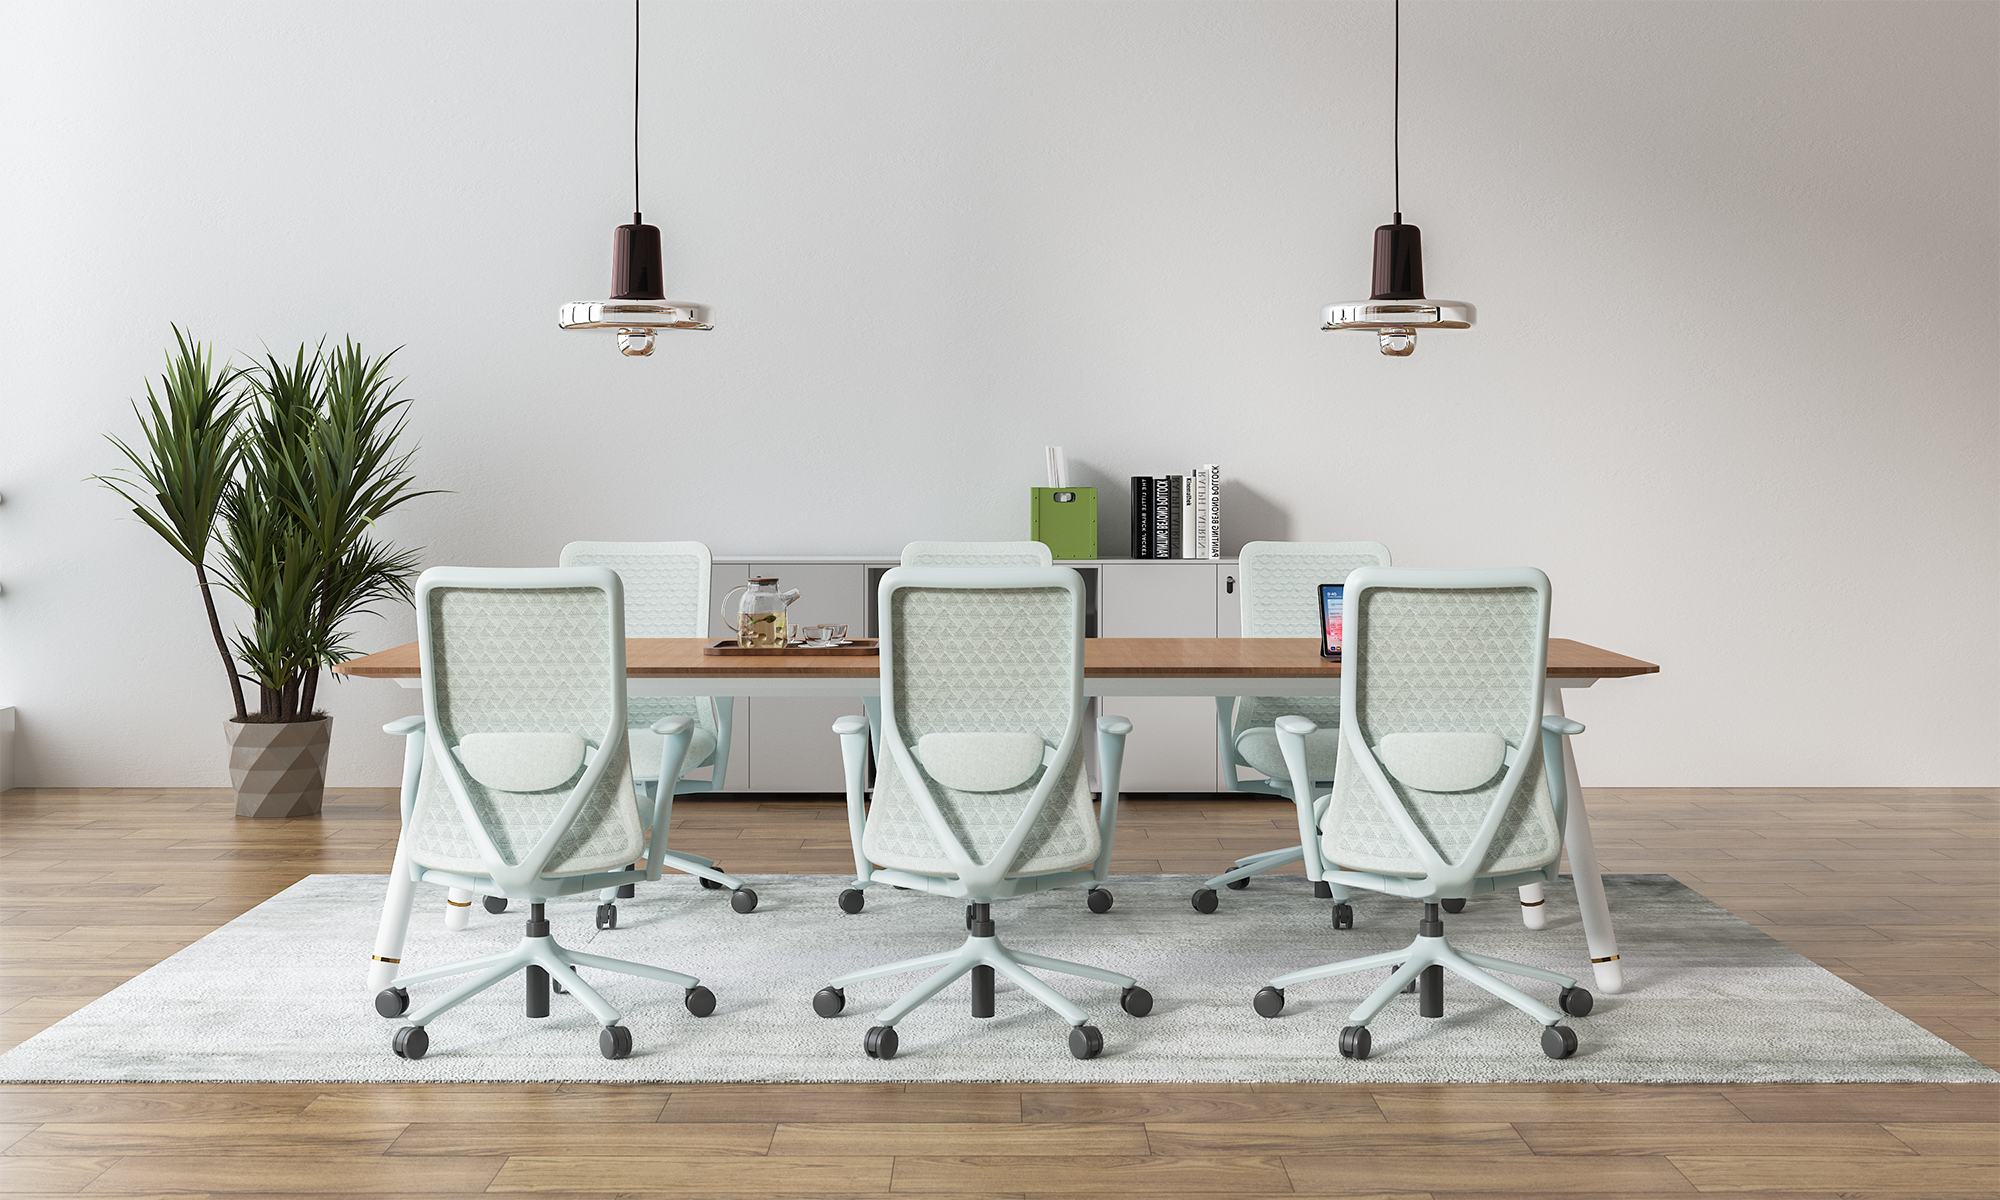 سری صندلی های جلسه با کیفیت عالی Goodtone Furniture